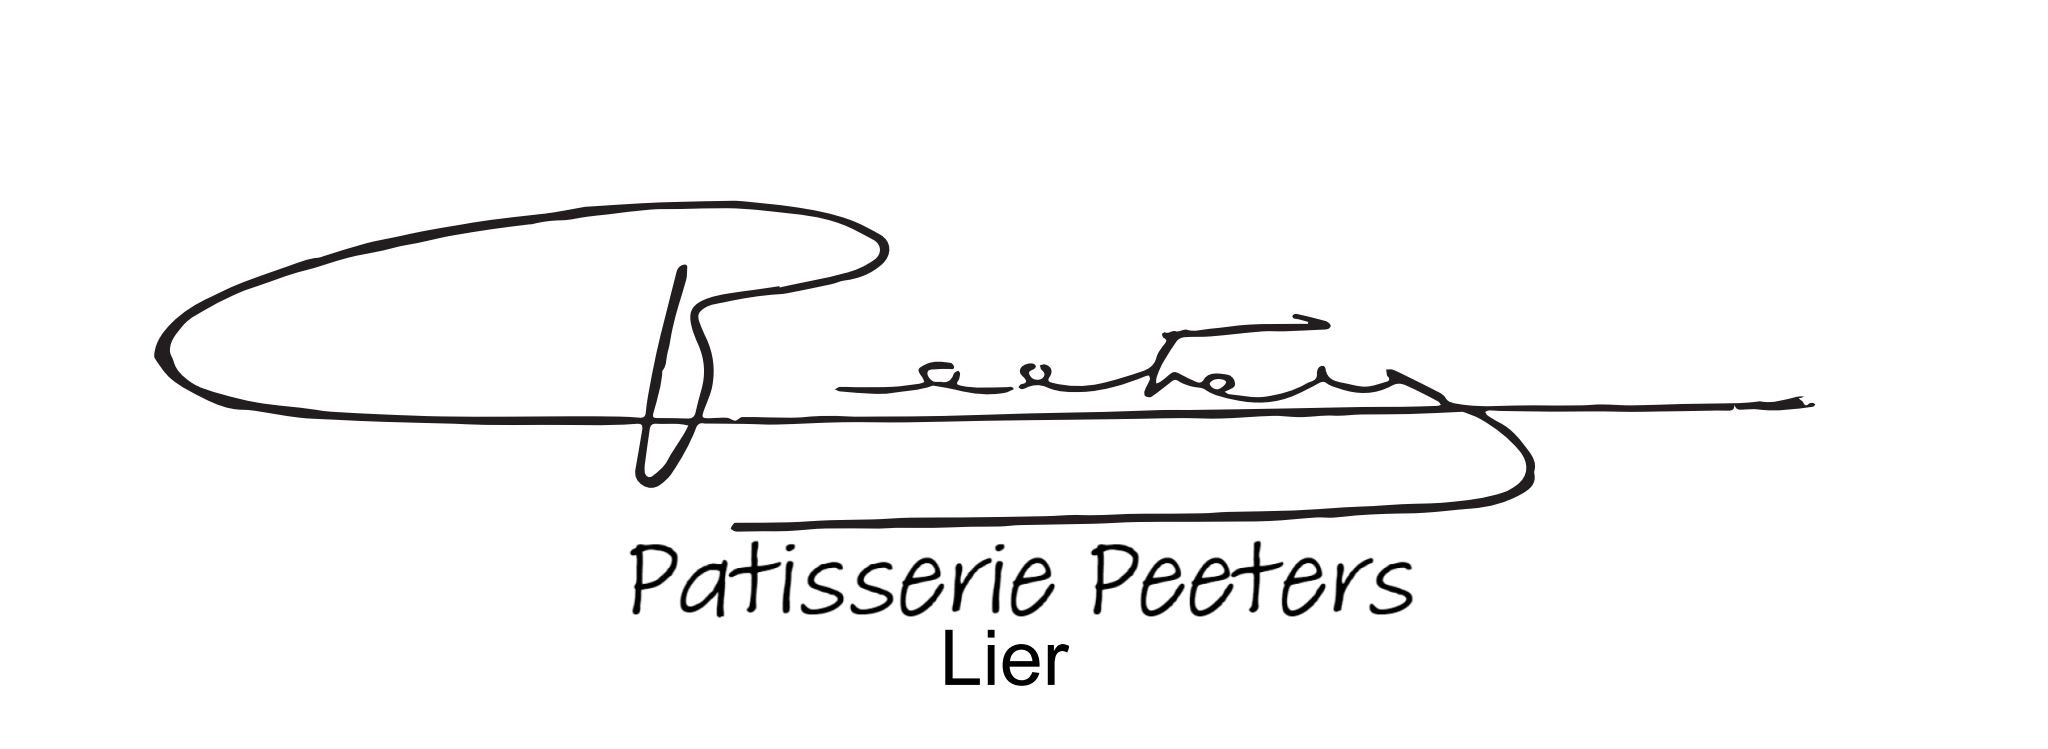 Peeters logo lier.jpg